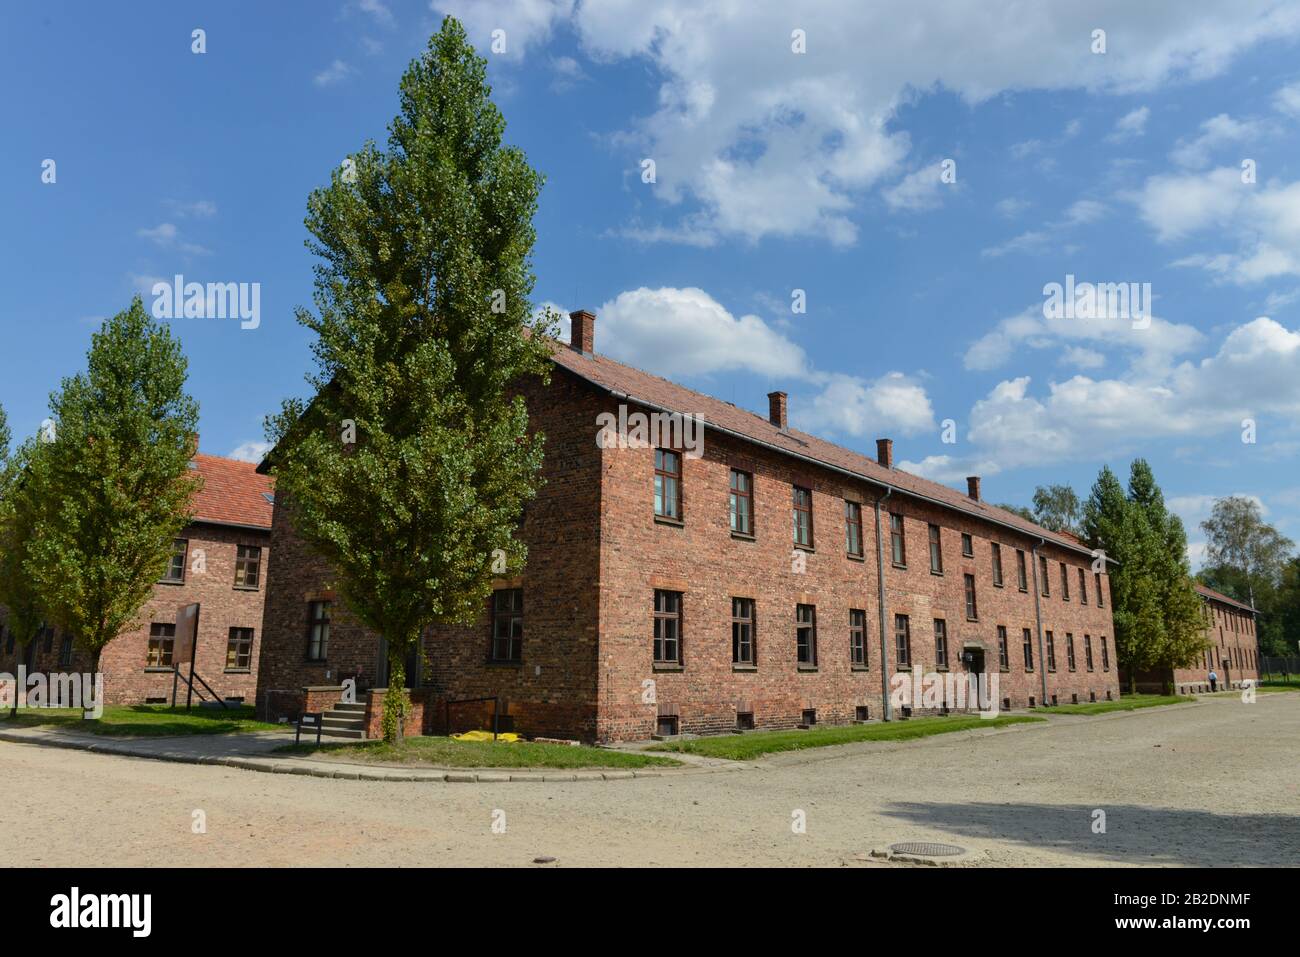 Lagergebaeude, Stammlager I, Konzentrationslager, Auschwitz-Birkenau, Auschwitz, Polen Stock Photo